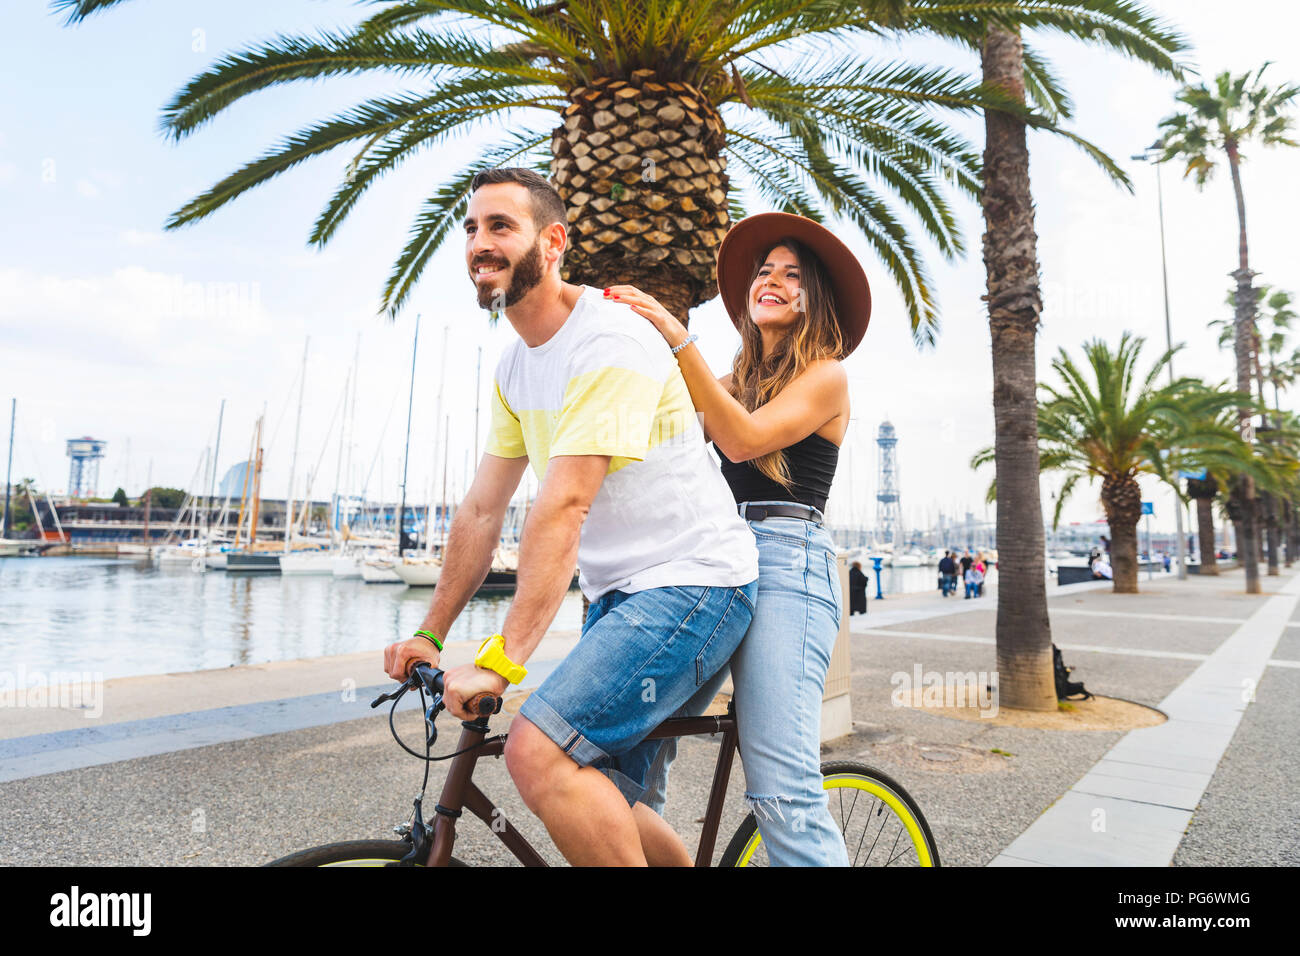 Espagne, Barcelone, couple et le partage d'un trajet sur un vélo ensemble à la promenade du bord de mer Banque D'Images